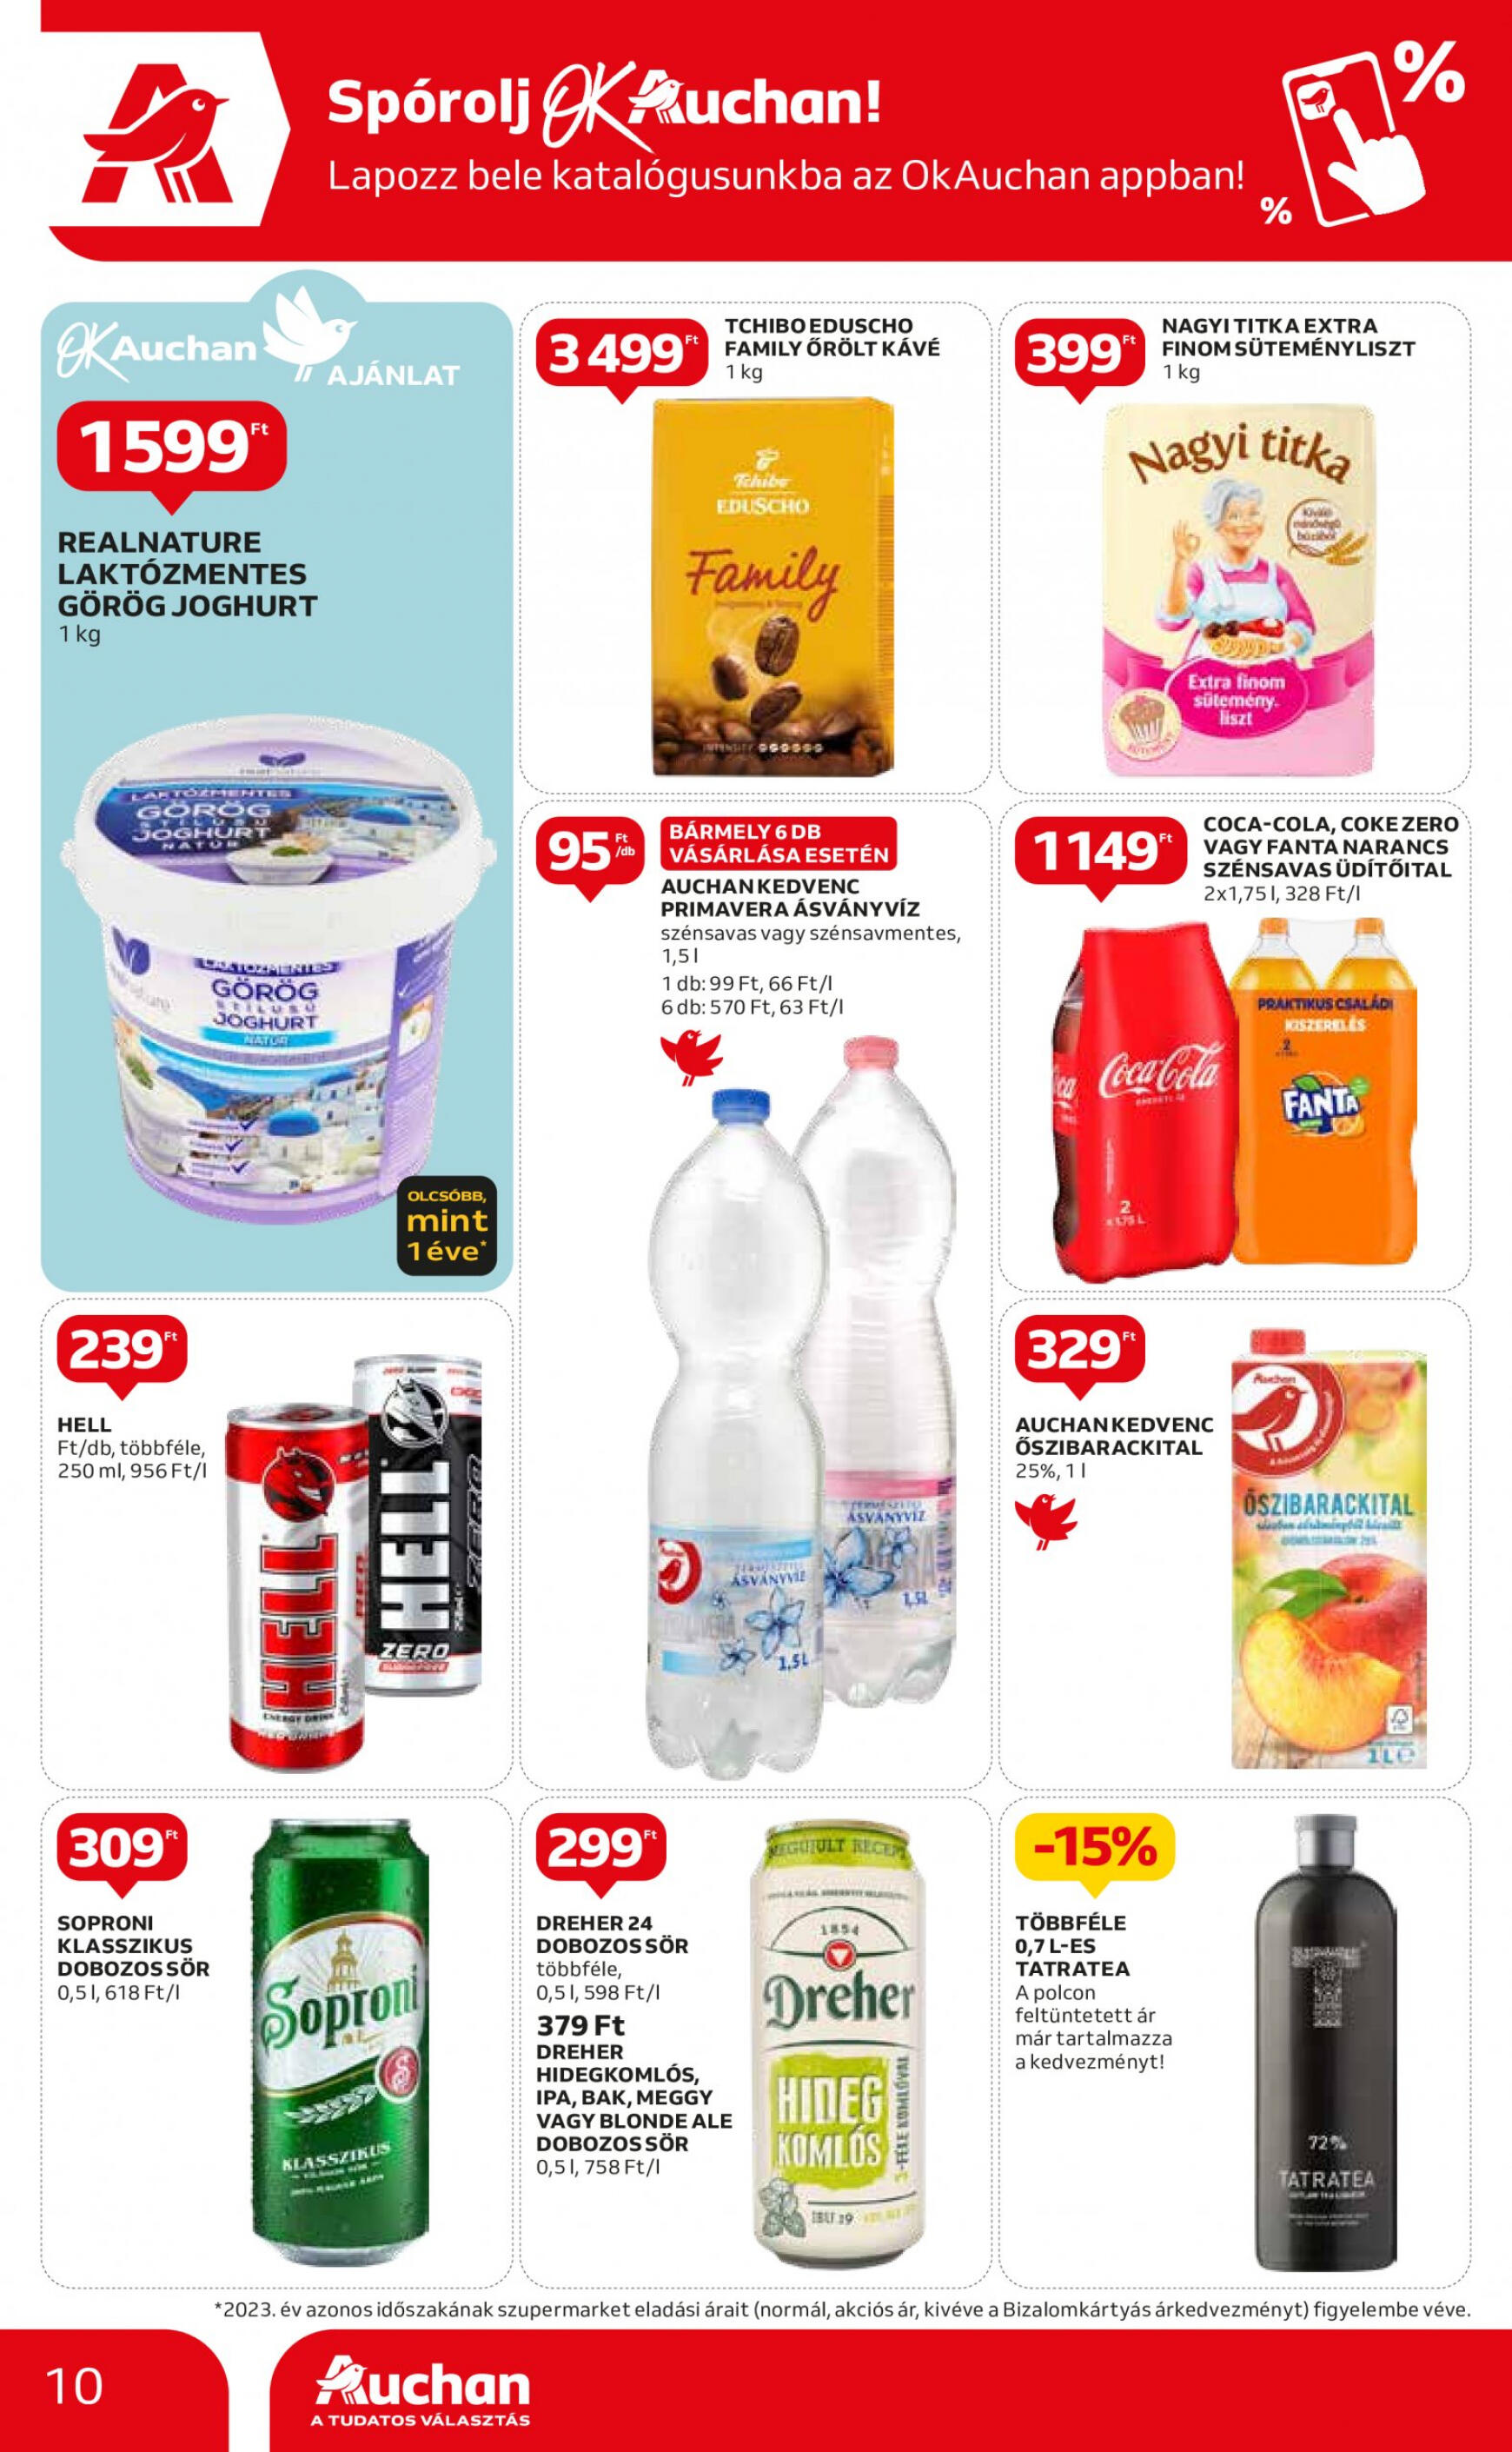 auchan - Aktuális újság Auchan szupermarket 05.09. - 05.15. - page: 10